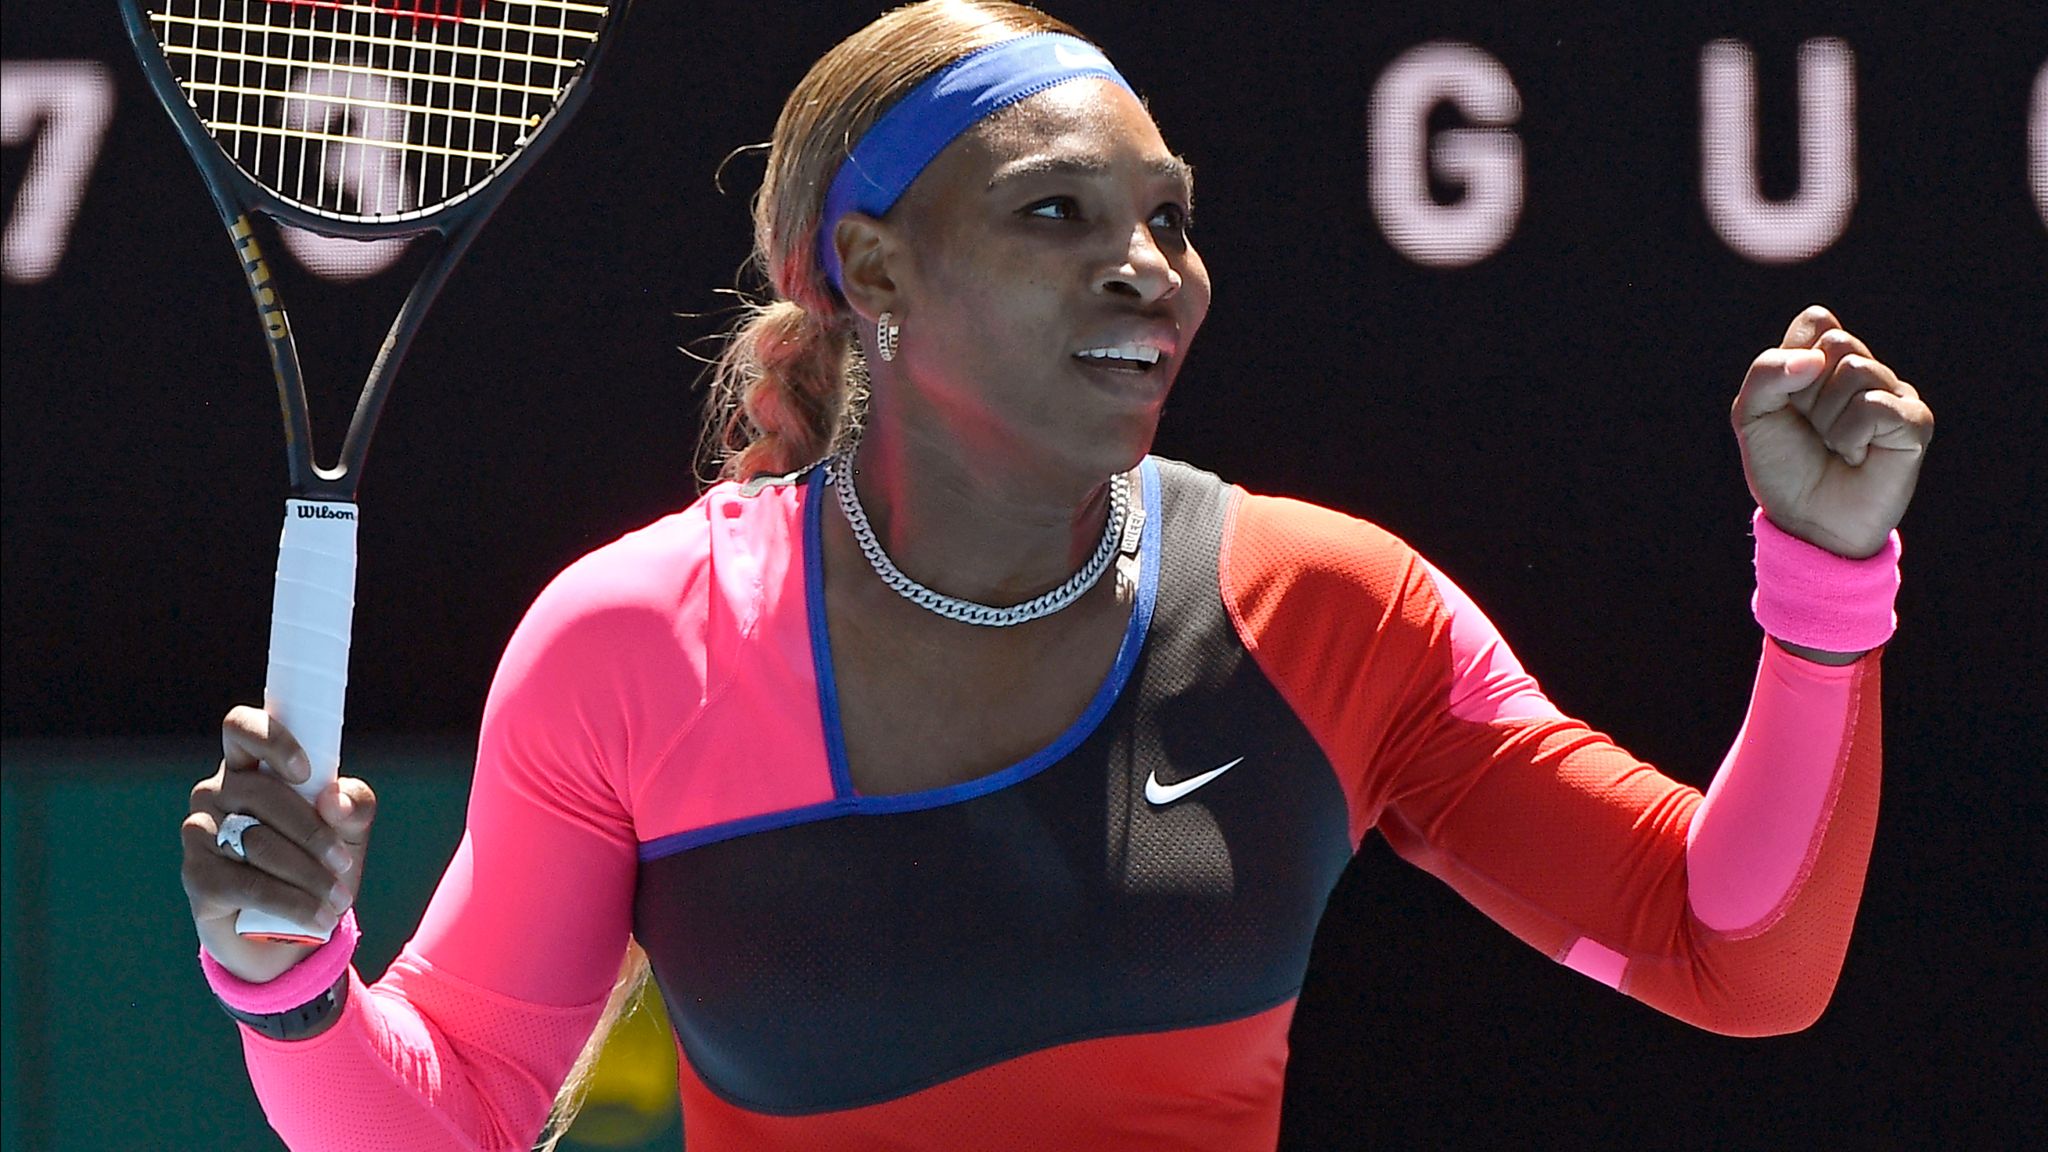 Australian Open Serena Williams and Naomi Osaka through to fourth round in Melbourne Tennis News Sky Sports